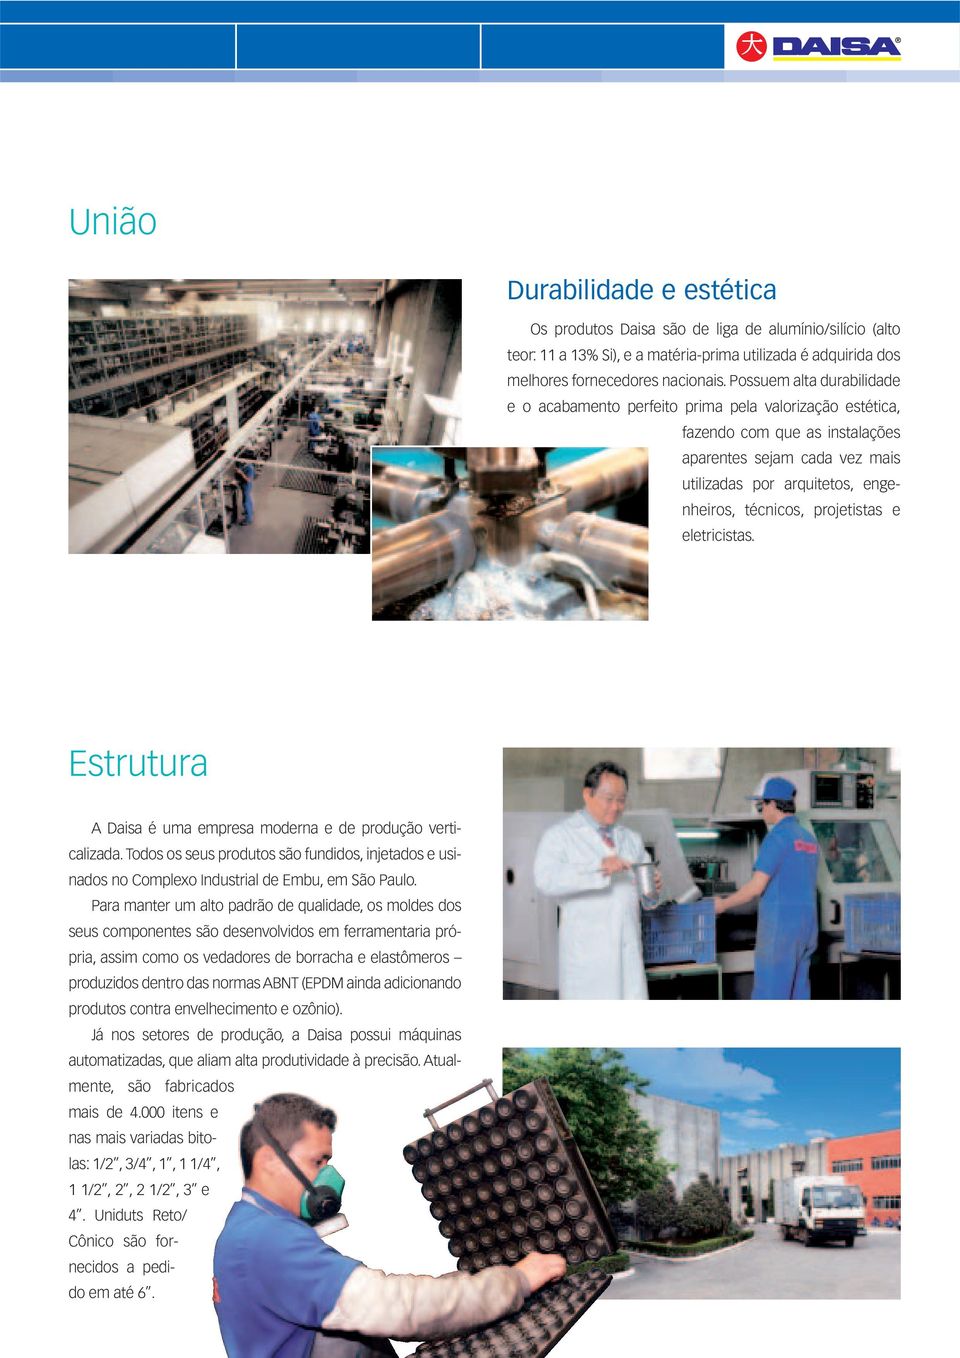 projetistas e eletricistas. Estrutura Daisa é uma empresa moderna e de produção verticalizada. Todos os seus produtos são fundidos, injetados e usinados no omplexo Industrial de Embu, em São Paulo.